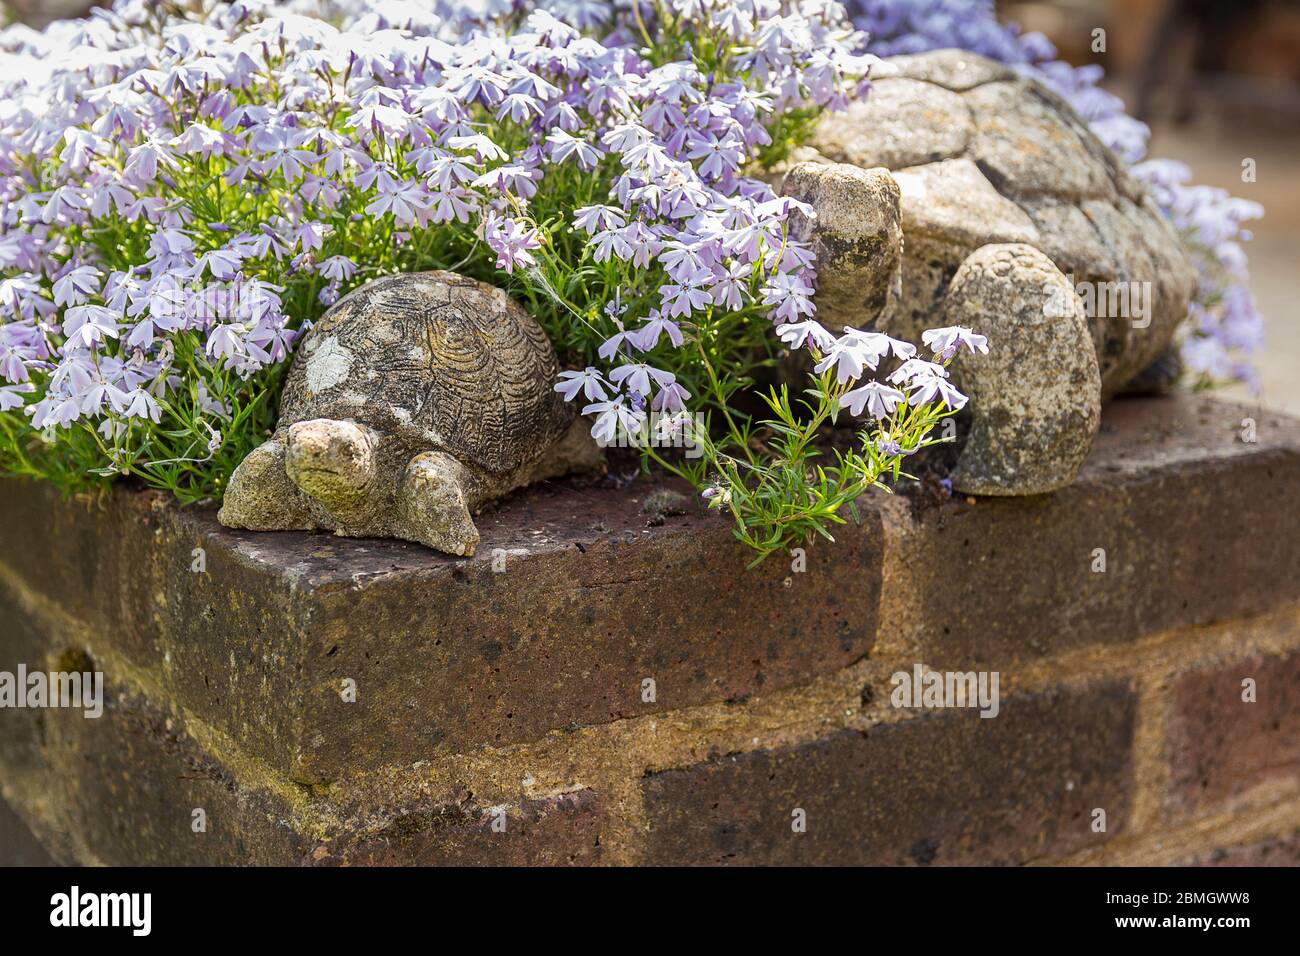 Terreno da giardino riempito basso muro piantato con varie piante fiorite e decorato con vecchi animali in cemento come queste tartarughe stagne. Foto Stock